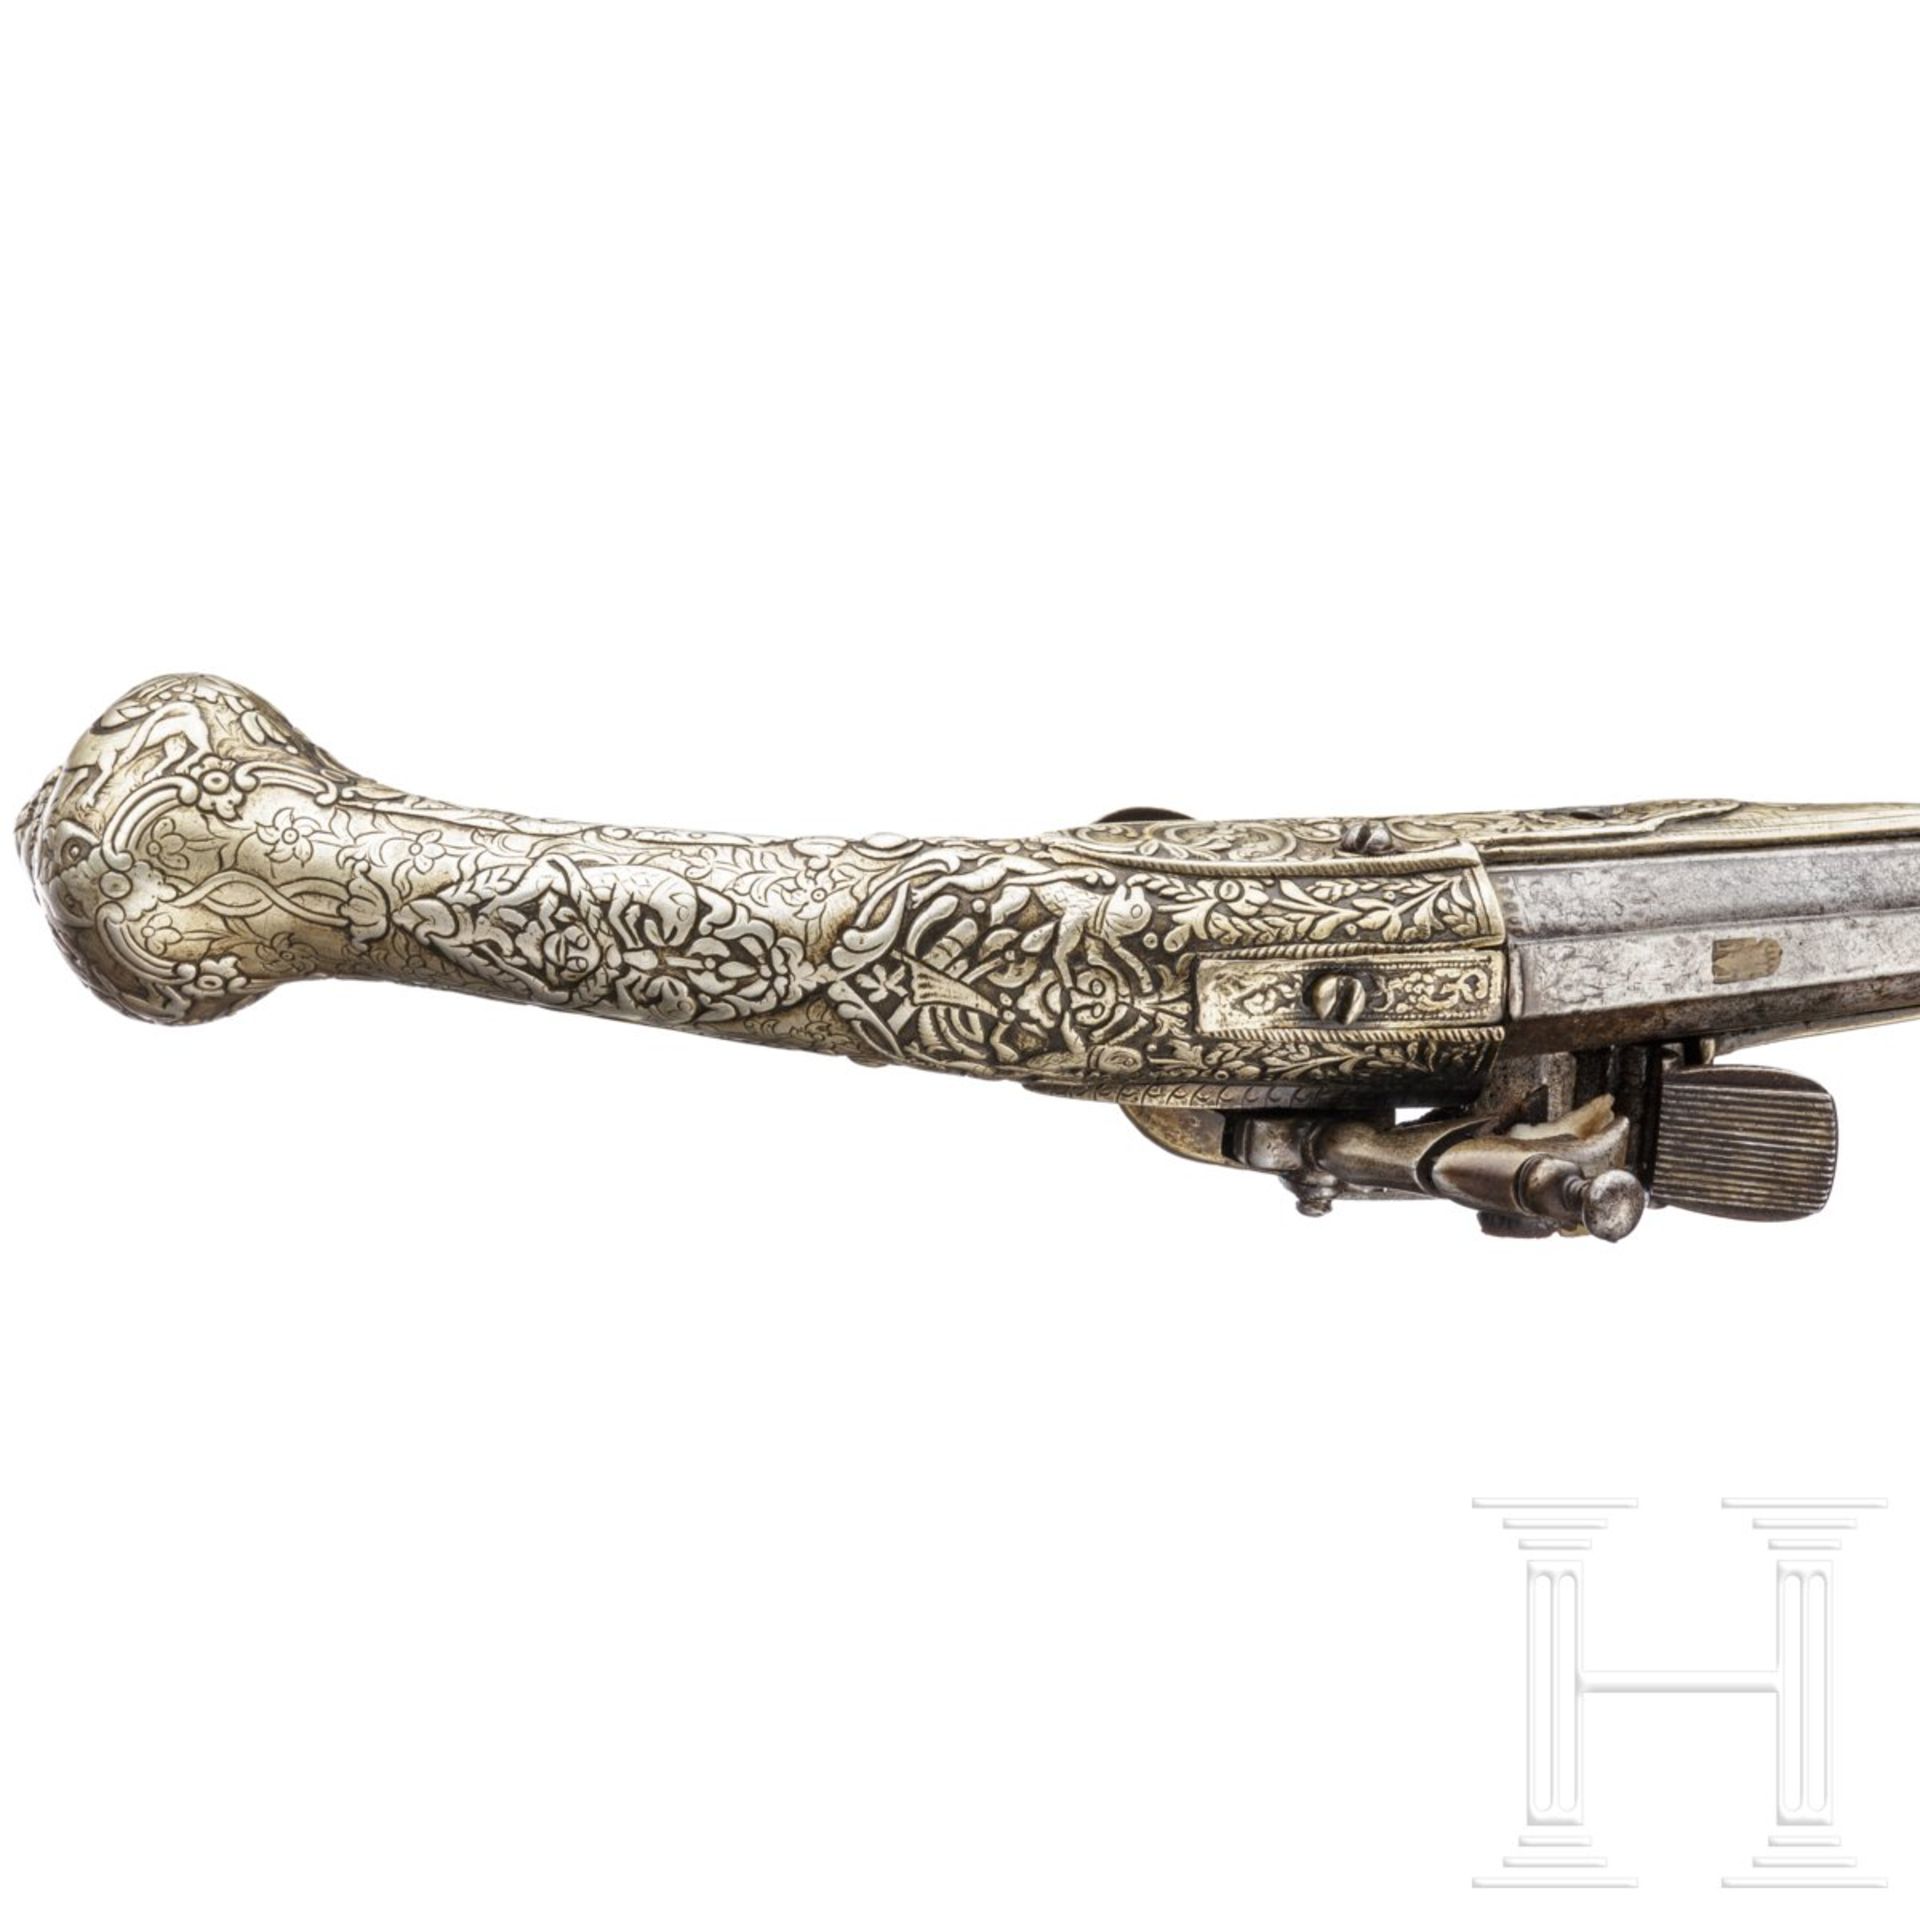 Silbergeschäftete Miquelet-Pistole, balkantürkisch/Albanien, um 1850 - Bild 3 aus 4